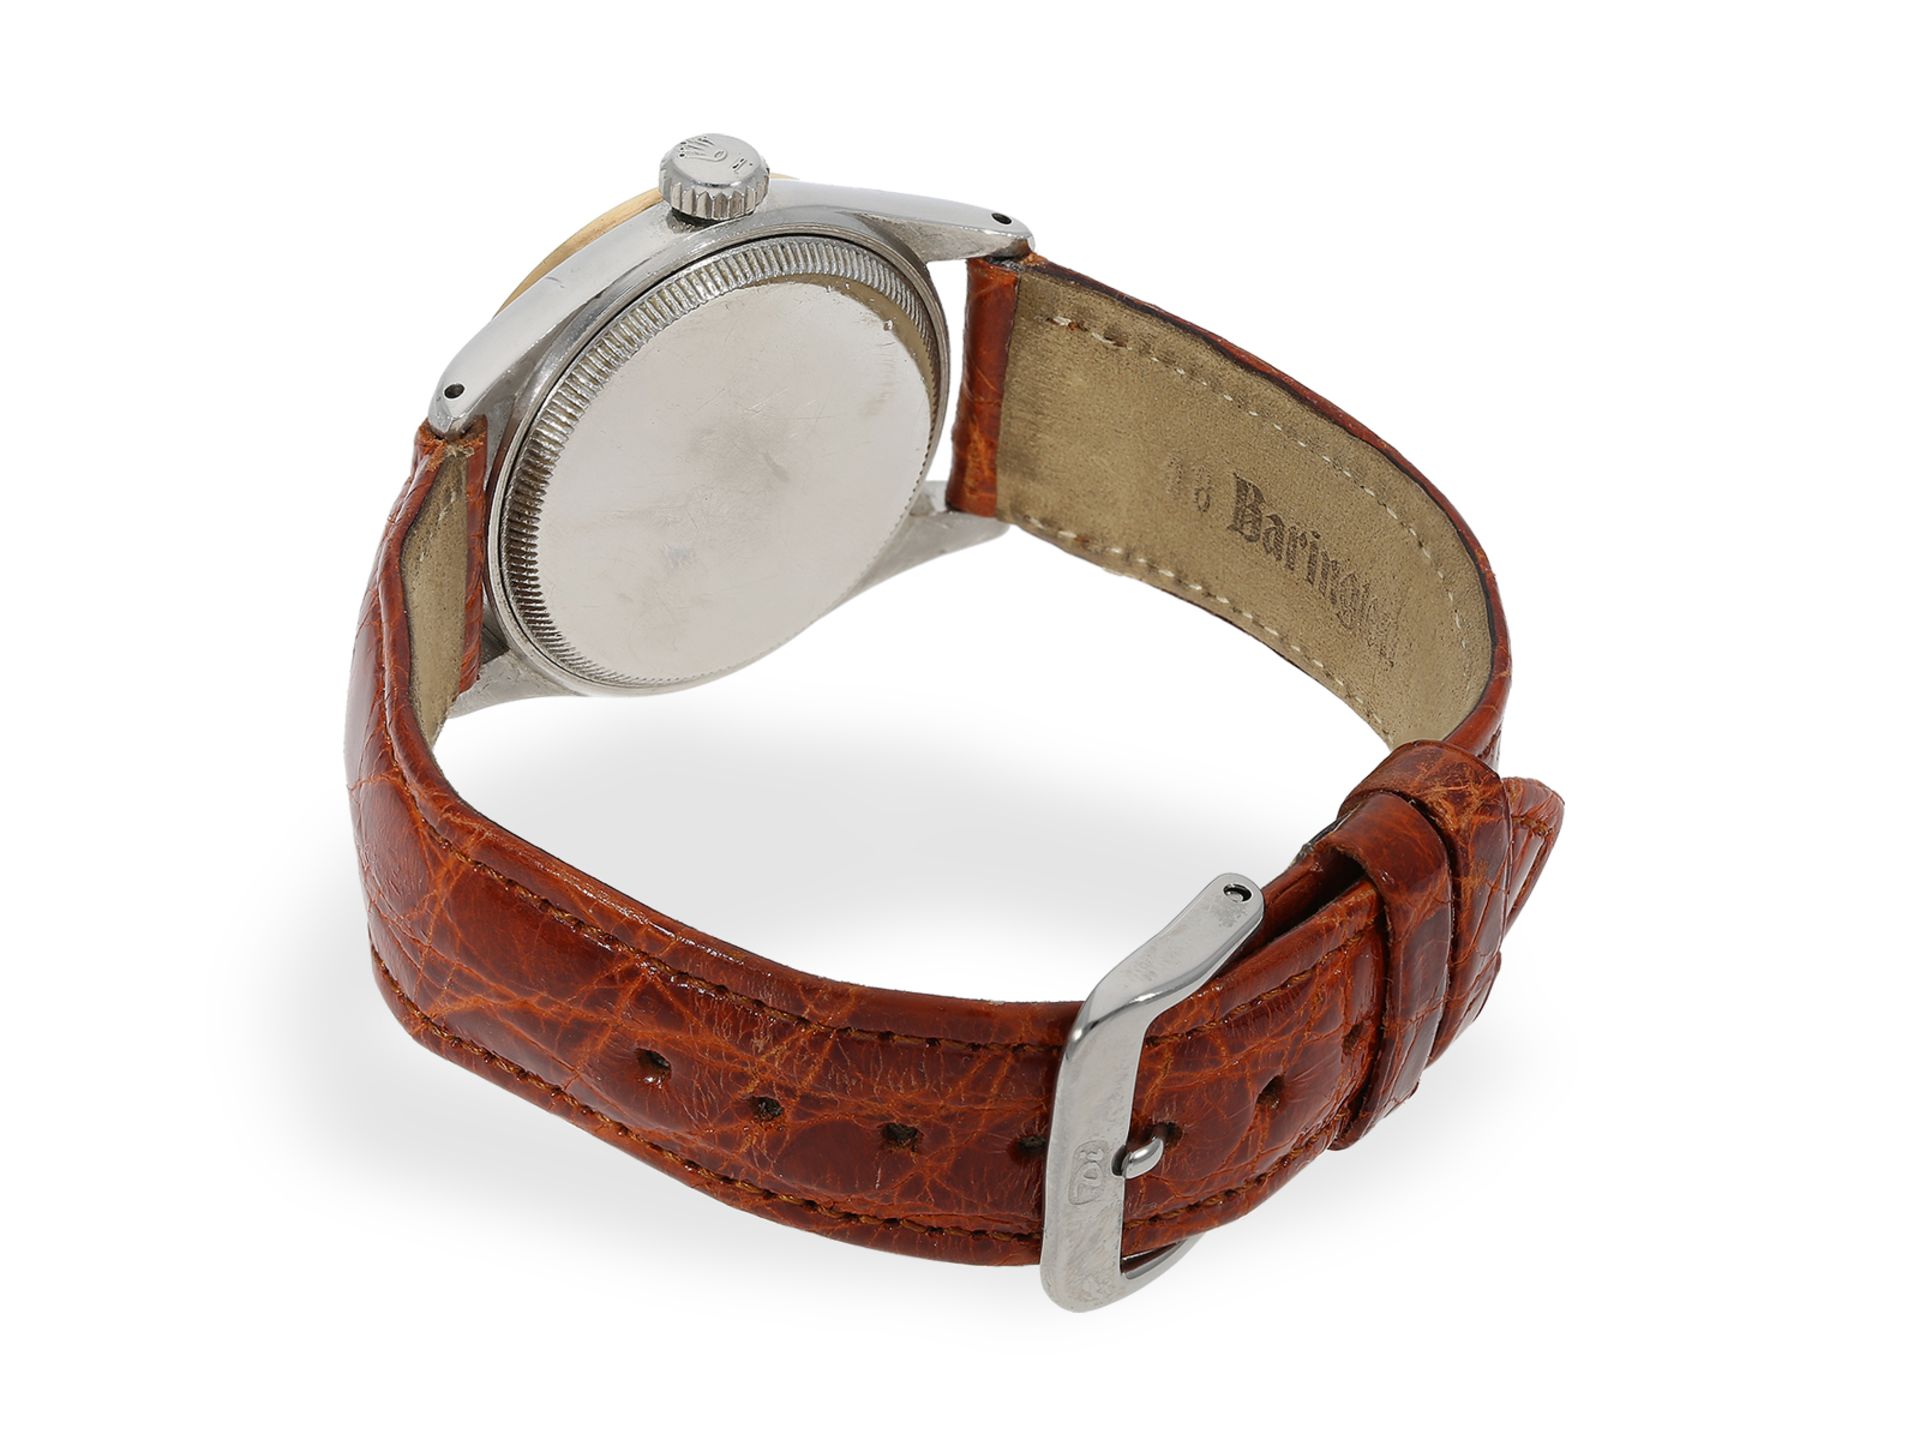 Armbanduhr: sehr seltene vintage Rolex Ref.6244 "Royal" mit Honeycomb-Dial, ca.1940 - Bild 5 aus 7